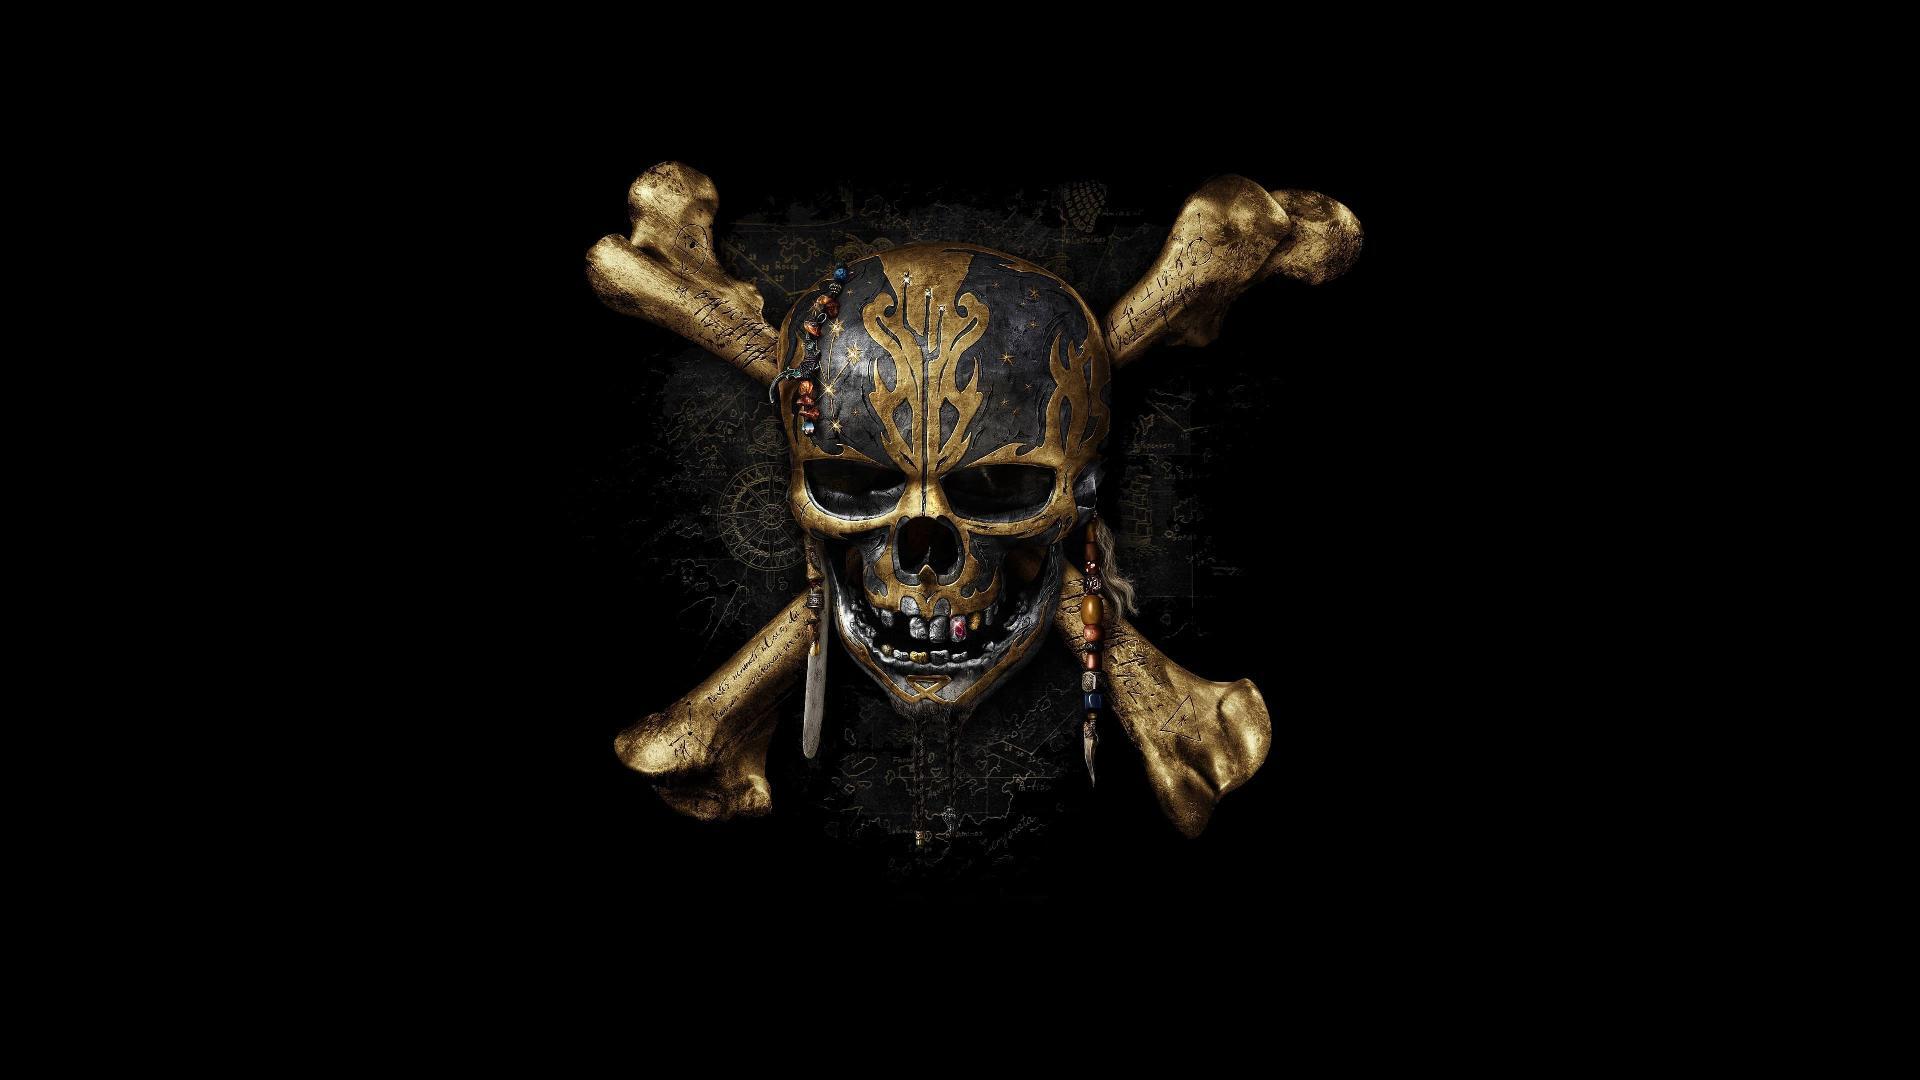 კარიბის ზღვის მეკობრეები: მკვდრები ზღაპრებს არ ჰყვებიან / Pirates of the Caribbean: Dead Men Tell No Tales